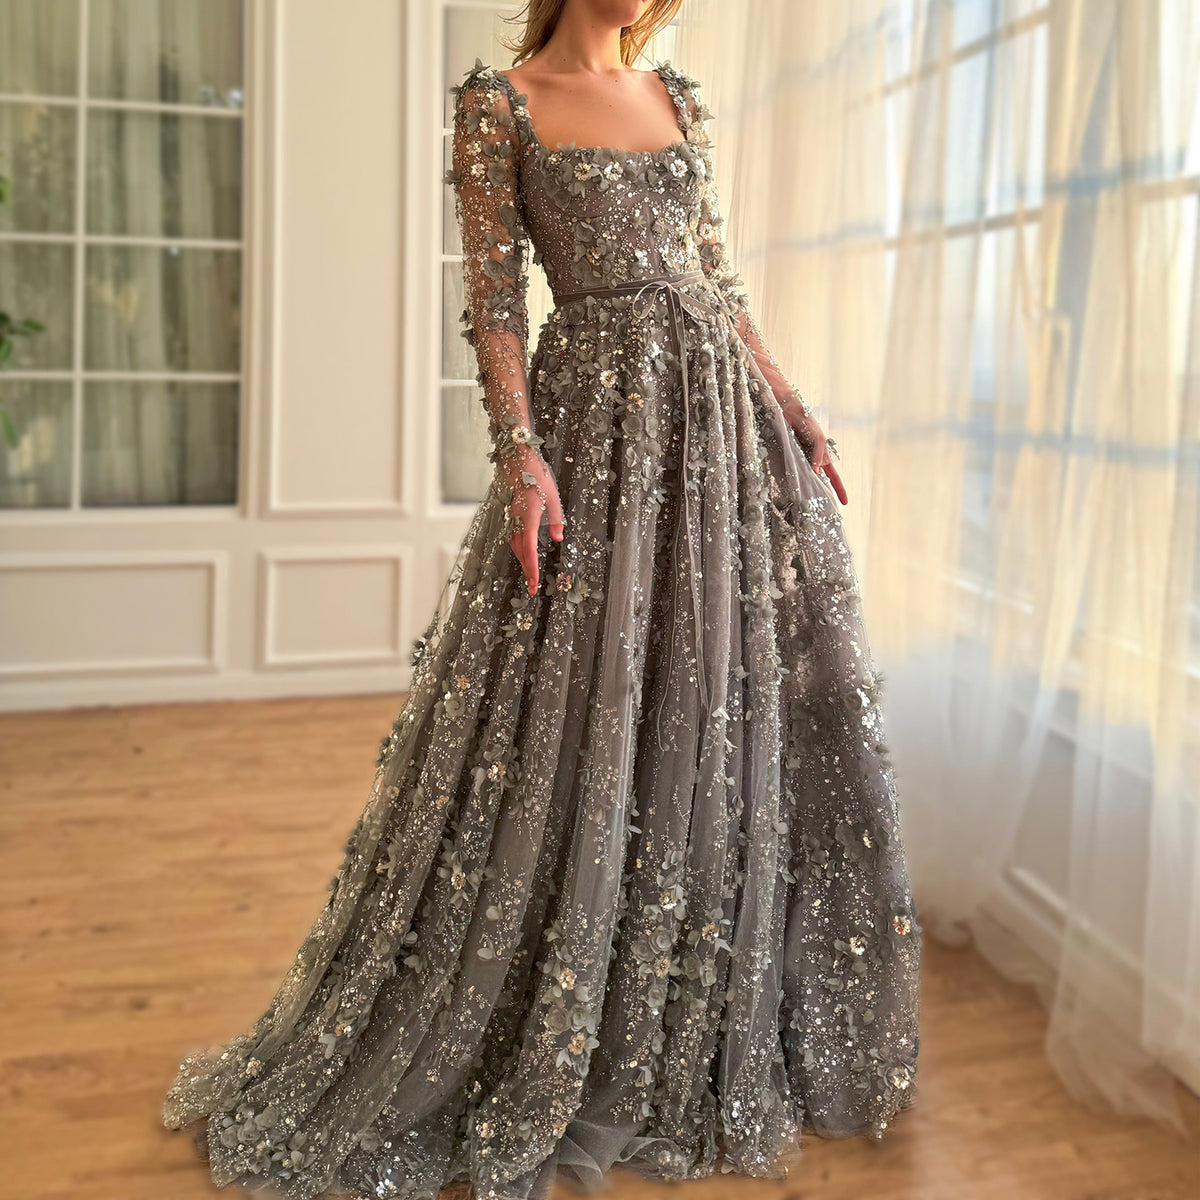 Sharon Said Luxus 3D Blume Grau Lange Ärmel Abendkleider für Frauen Hochzeit Party Elegante Arabisch A-linie Formale Kleider SS353